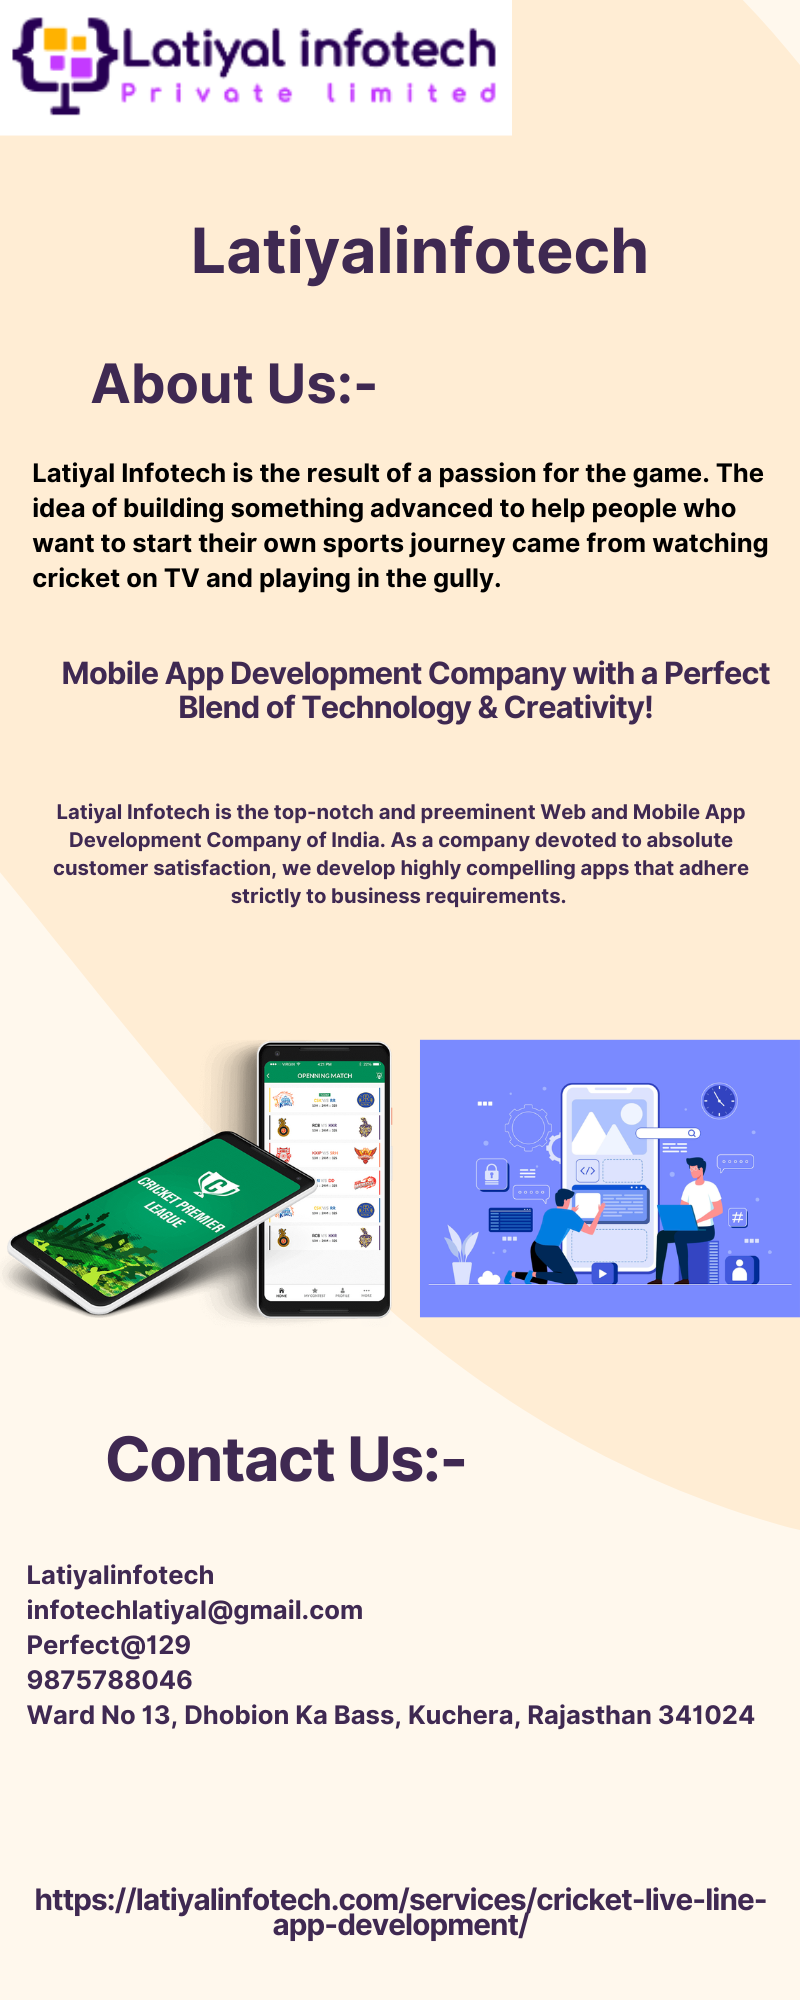 Cricket live line app development Company - Latiyalinfotech